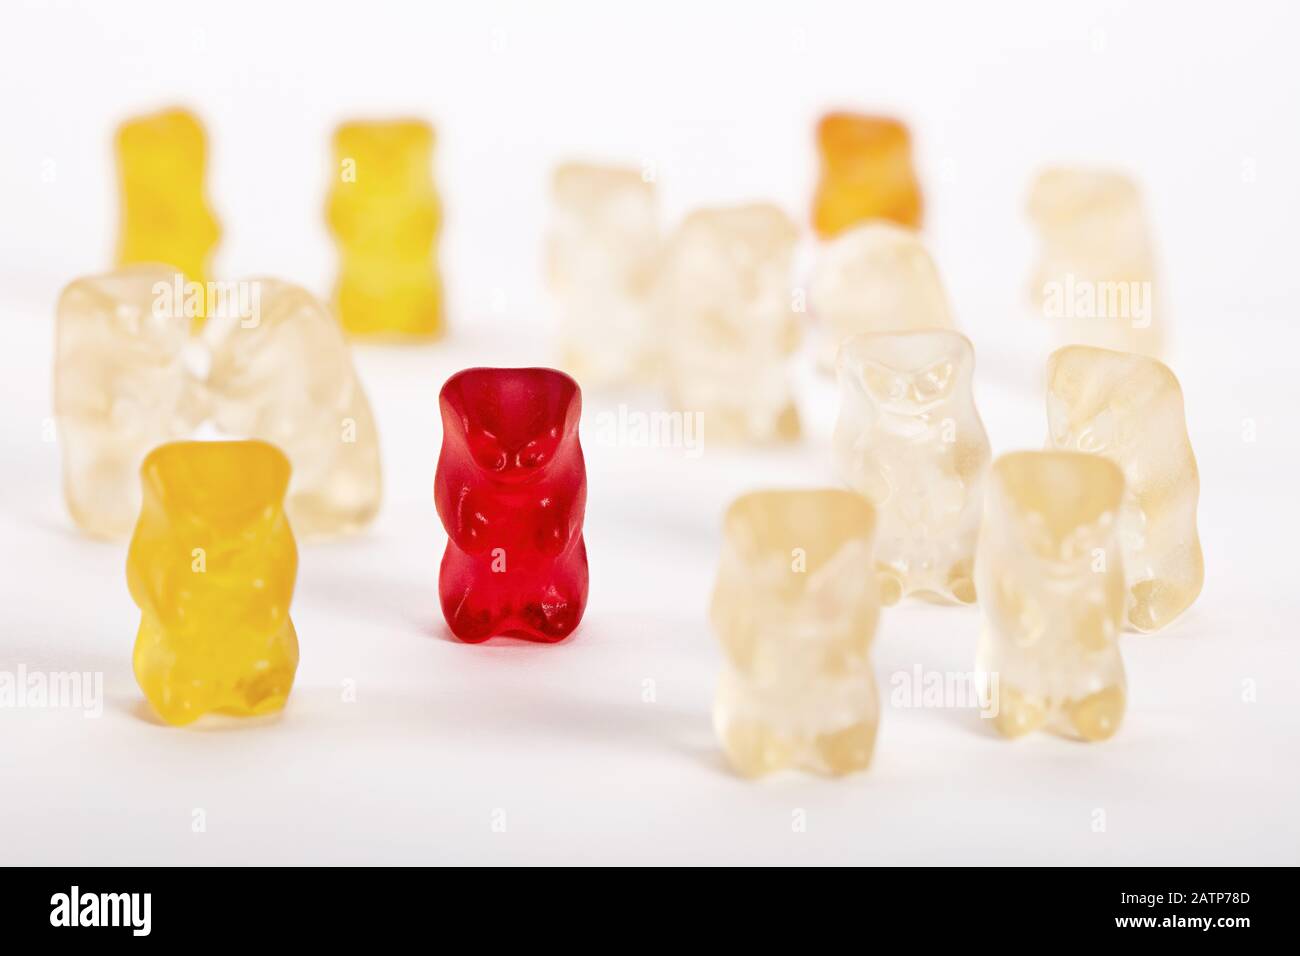 Gruppe von Gummibären, bei denen ein Bär ausgeschlossen ist. Sozialer Ausschluss, Diskriminierung oder Einsamkeitsbegriff. Stockfoto